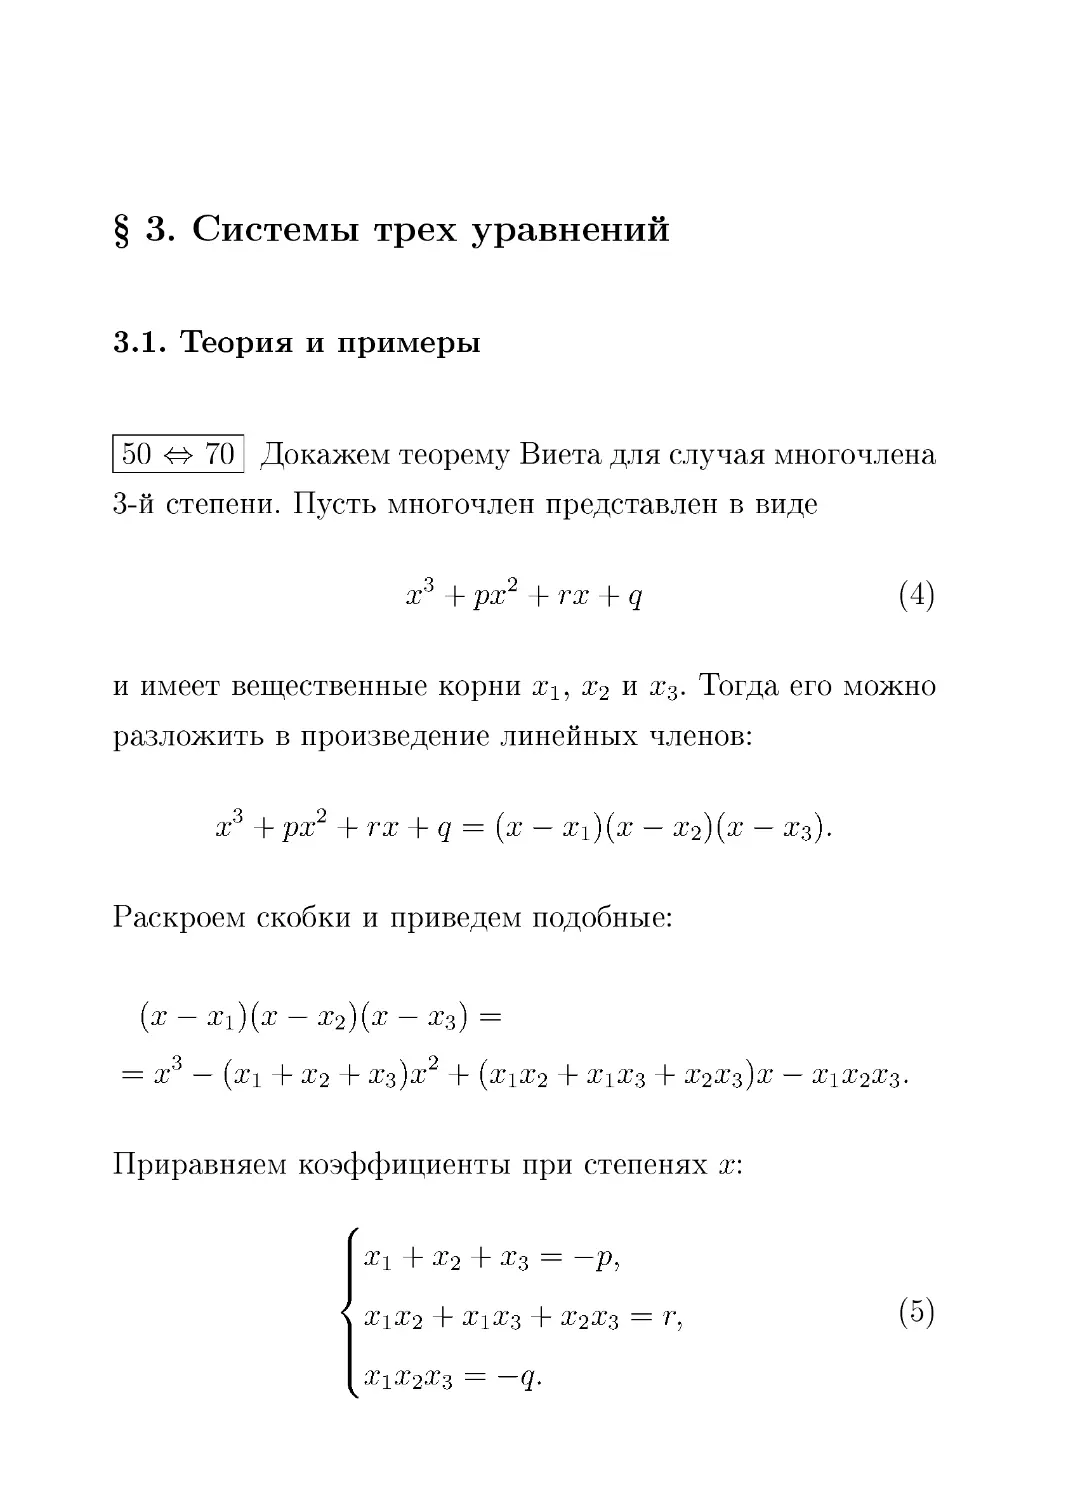 § 3. Cистемы трех уравнений